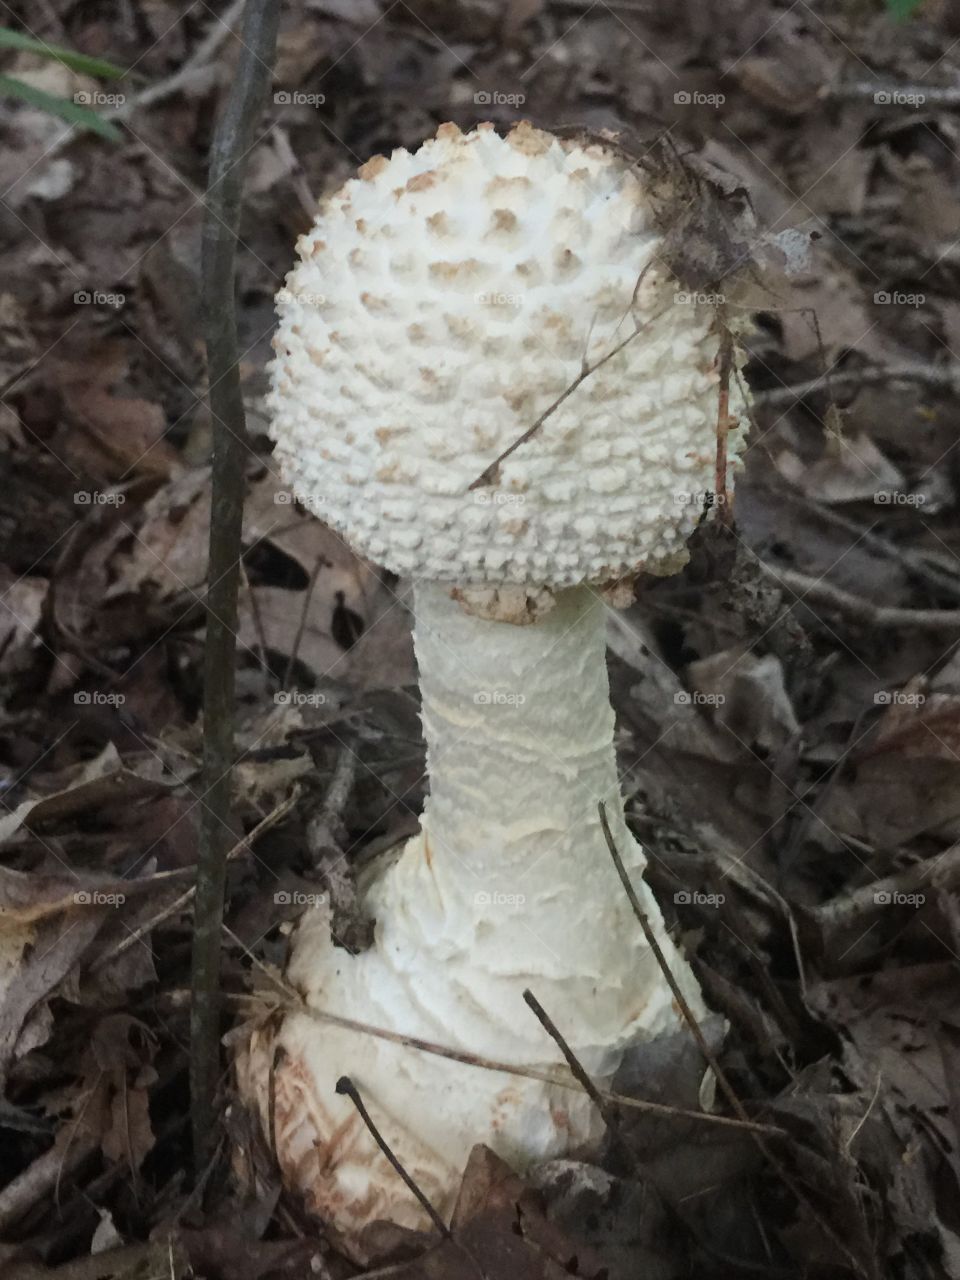 Large wild mushroom 